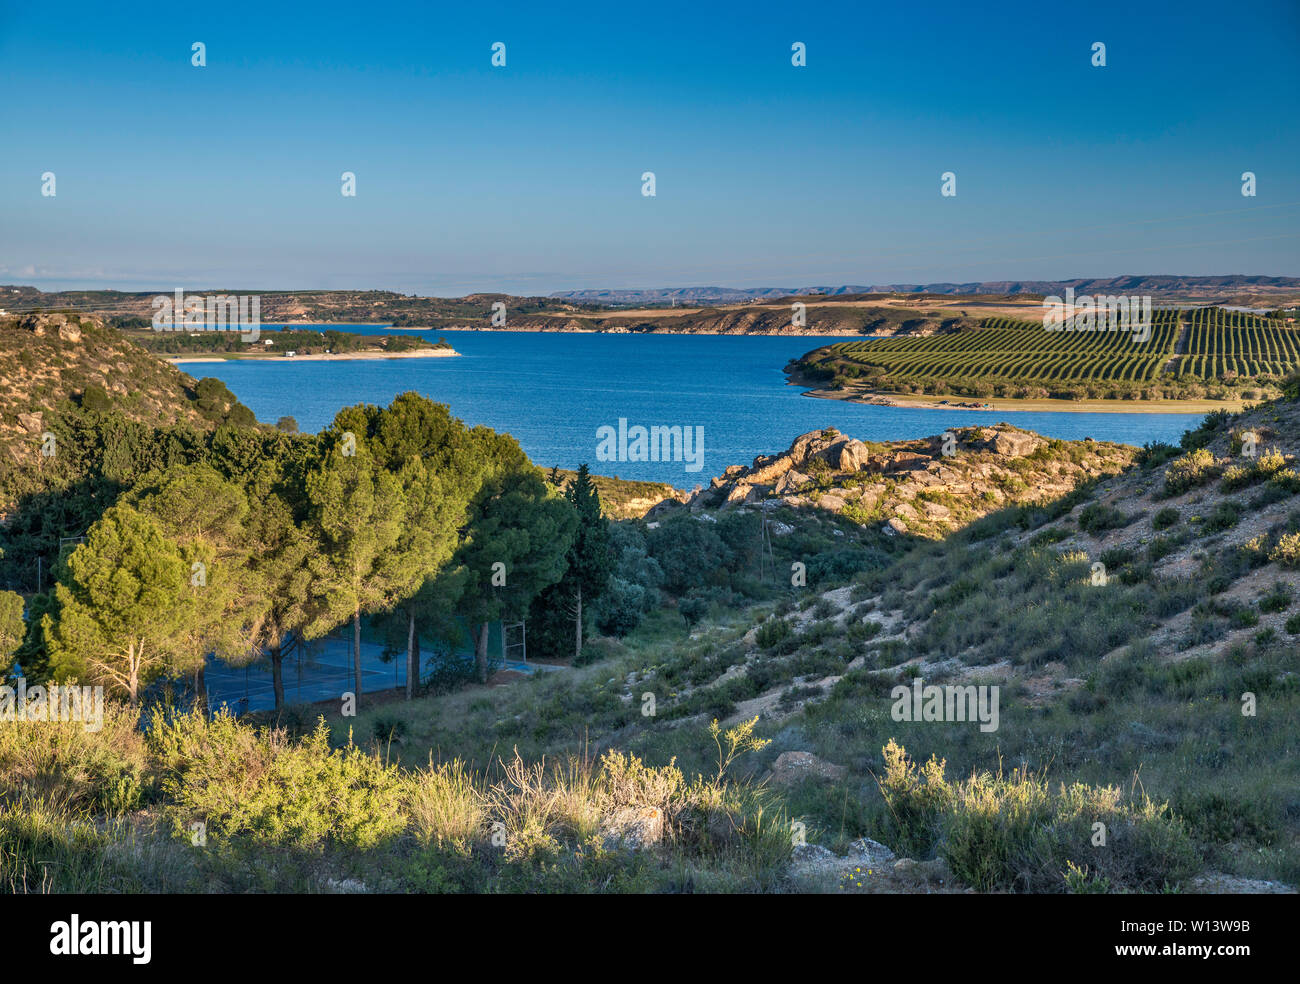 El embalse de Mequinenza (Mar de Aragón) Depósito en río Ebro cerca de la ciudad del Ebro, provincia de Zaragoza, Aragón, España Foto de stock